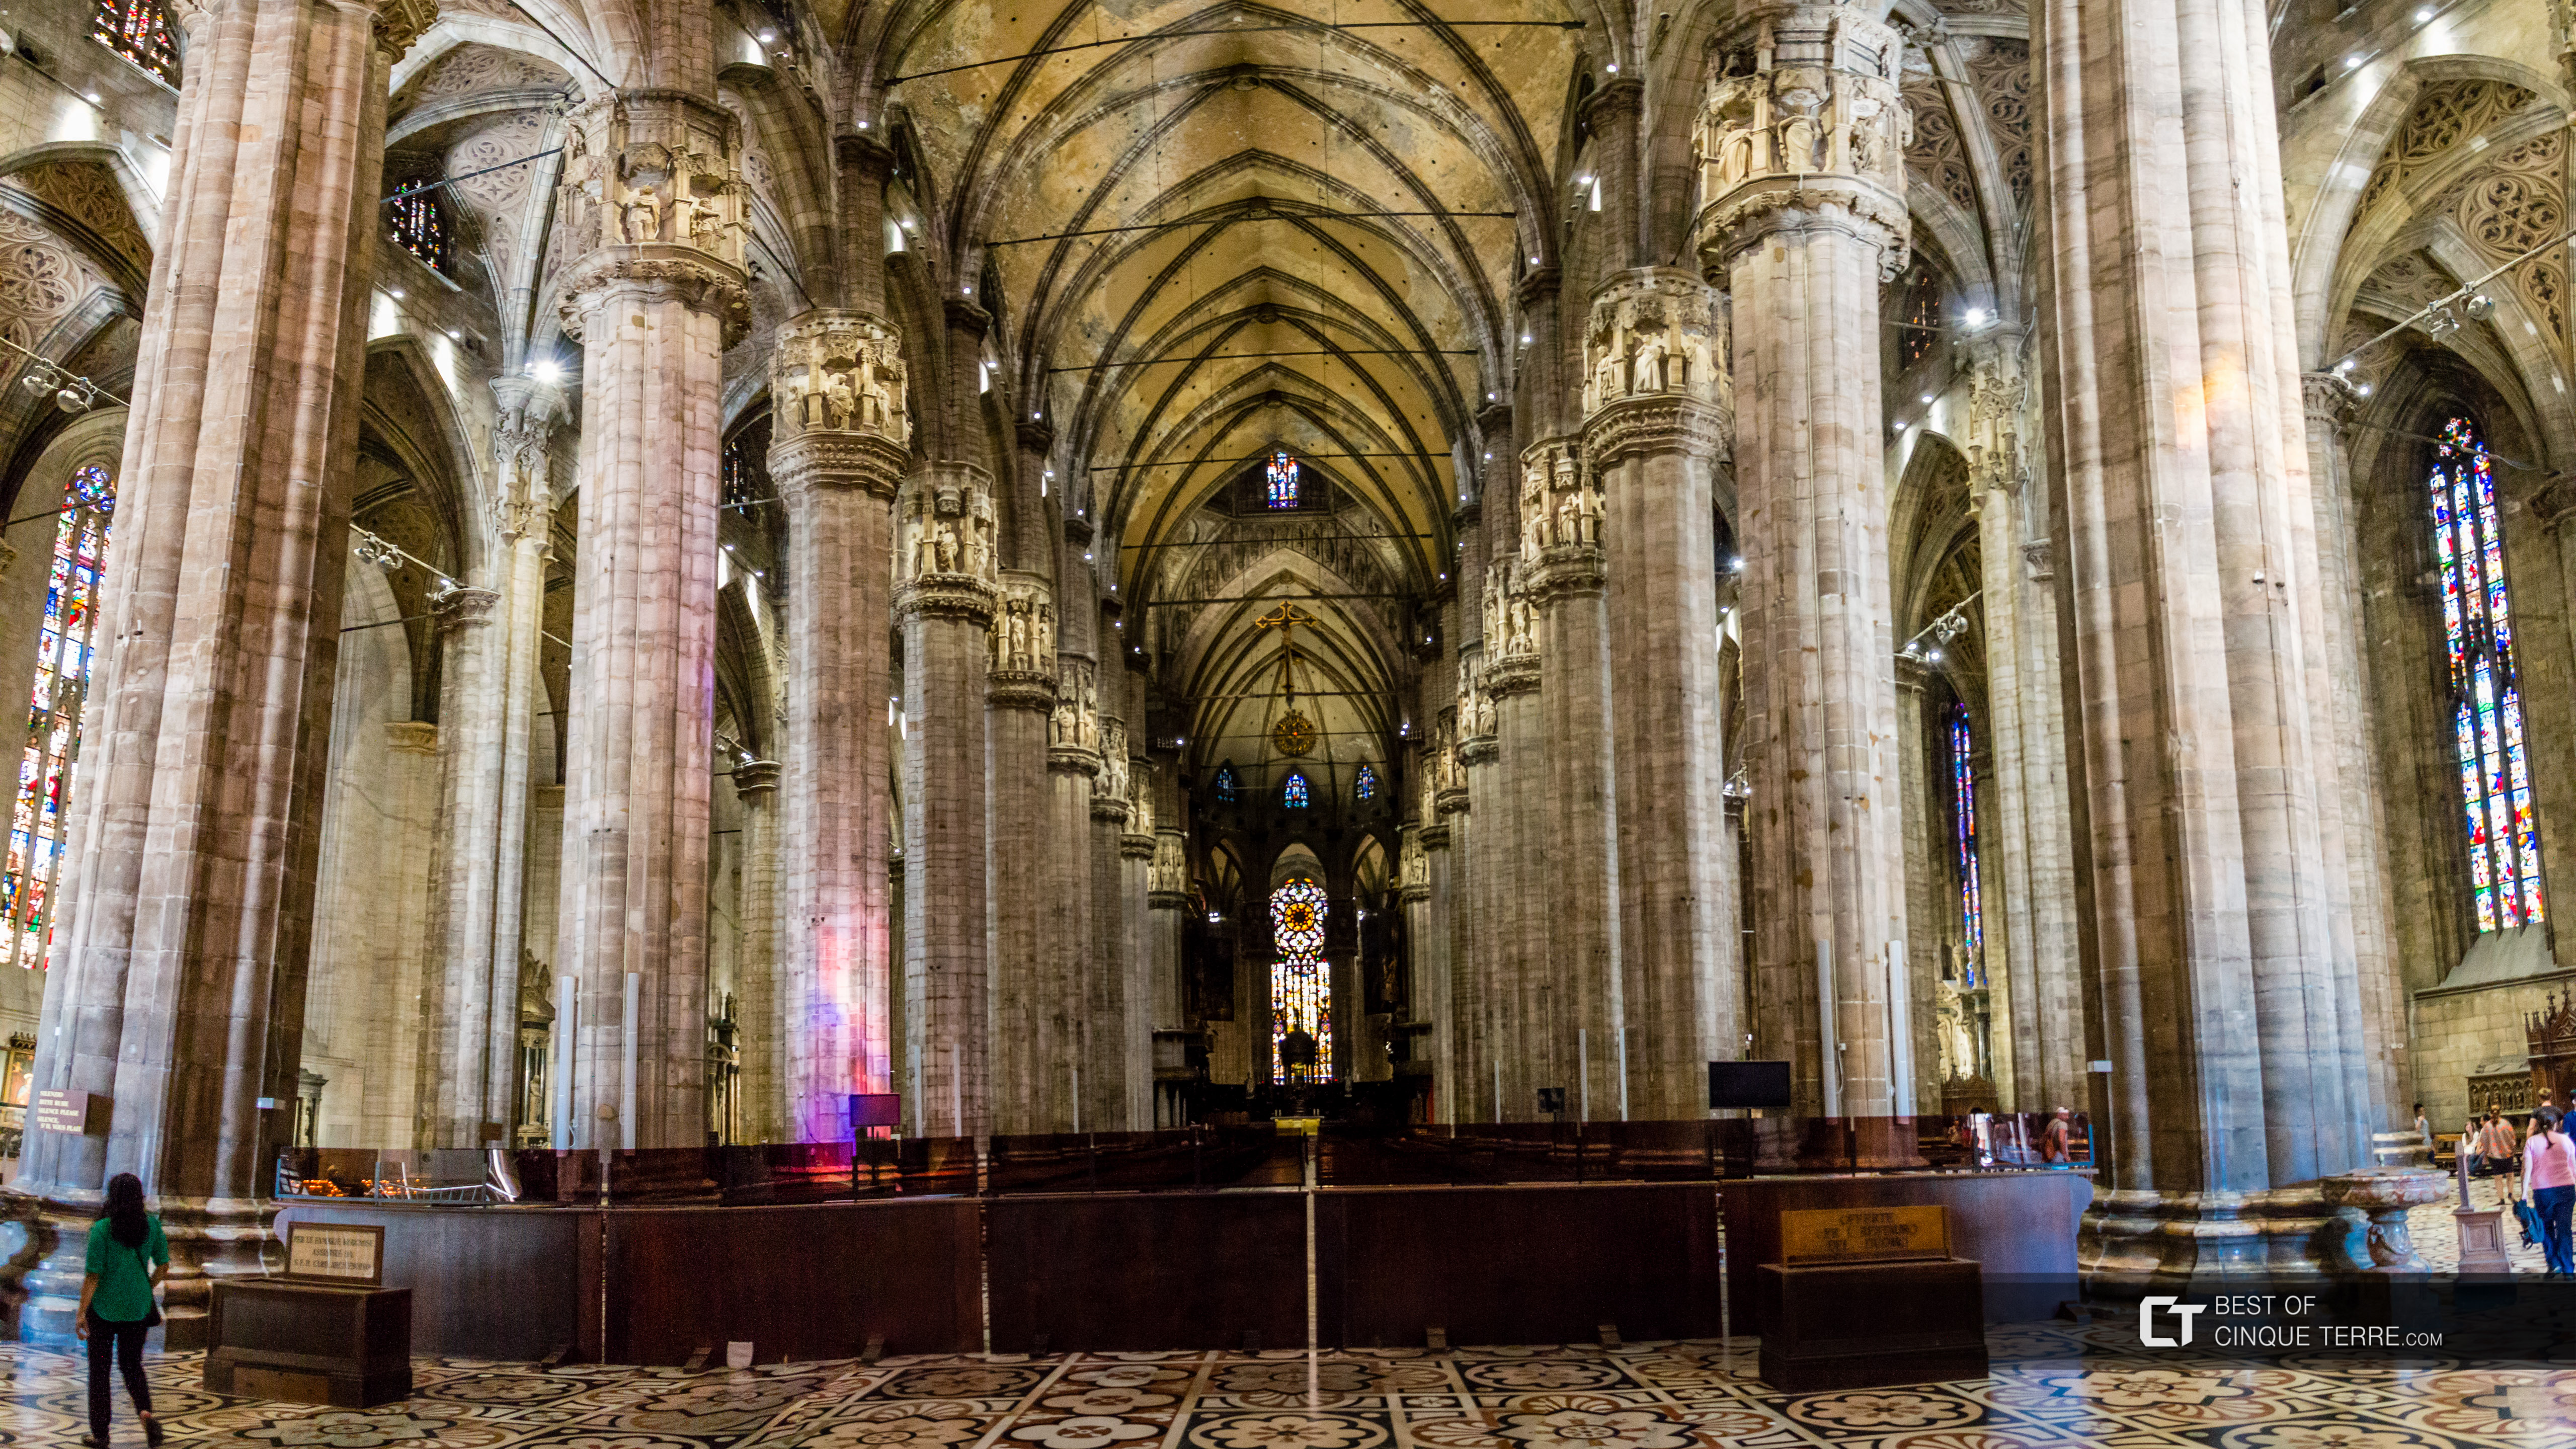 El interior de la Catedral, Milán, Italia